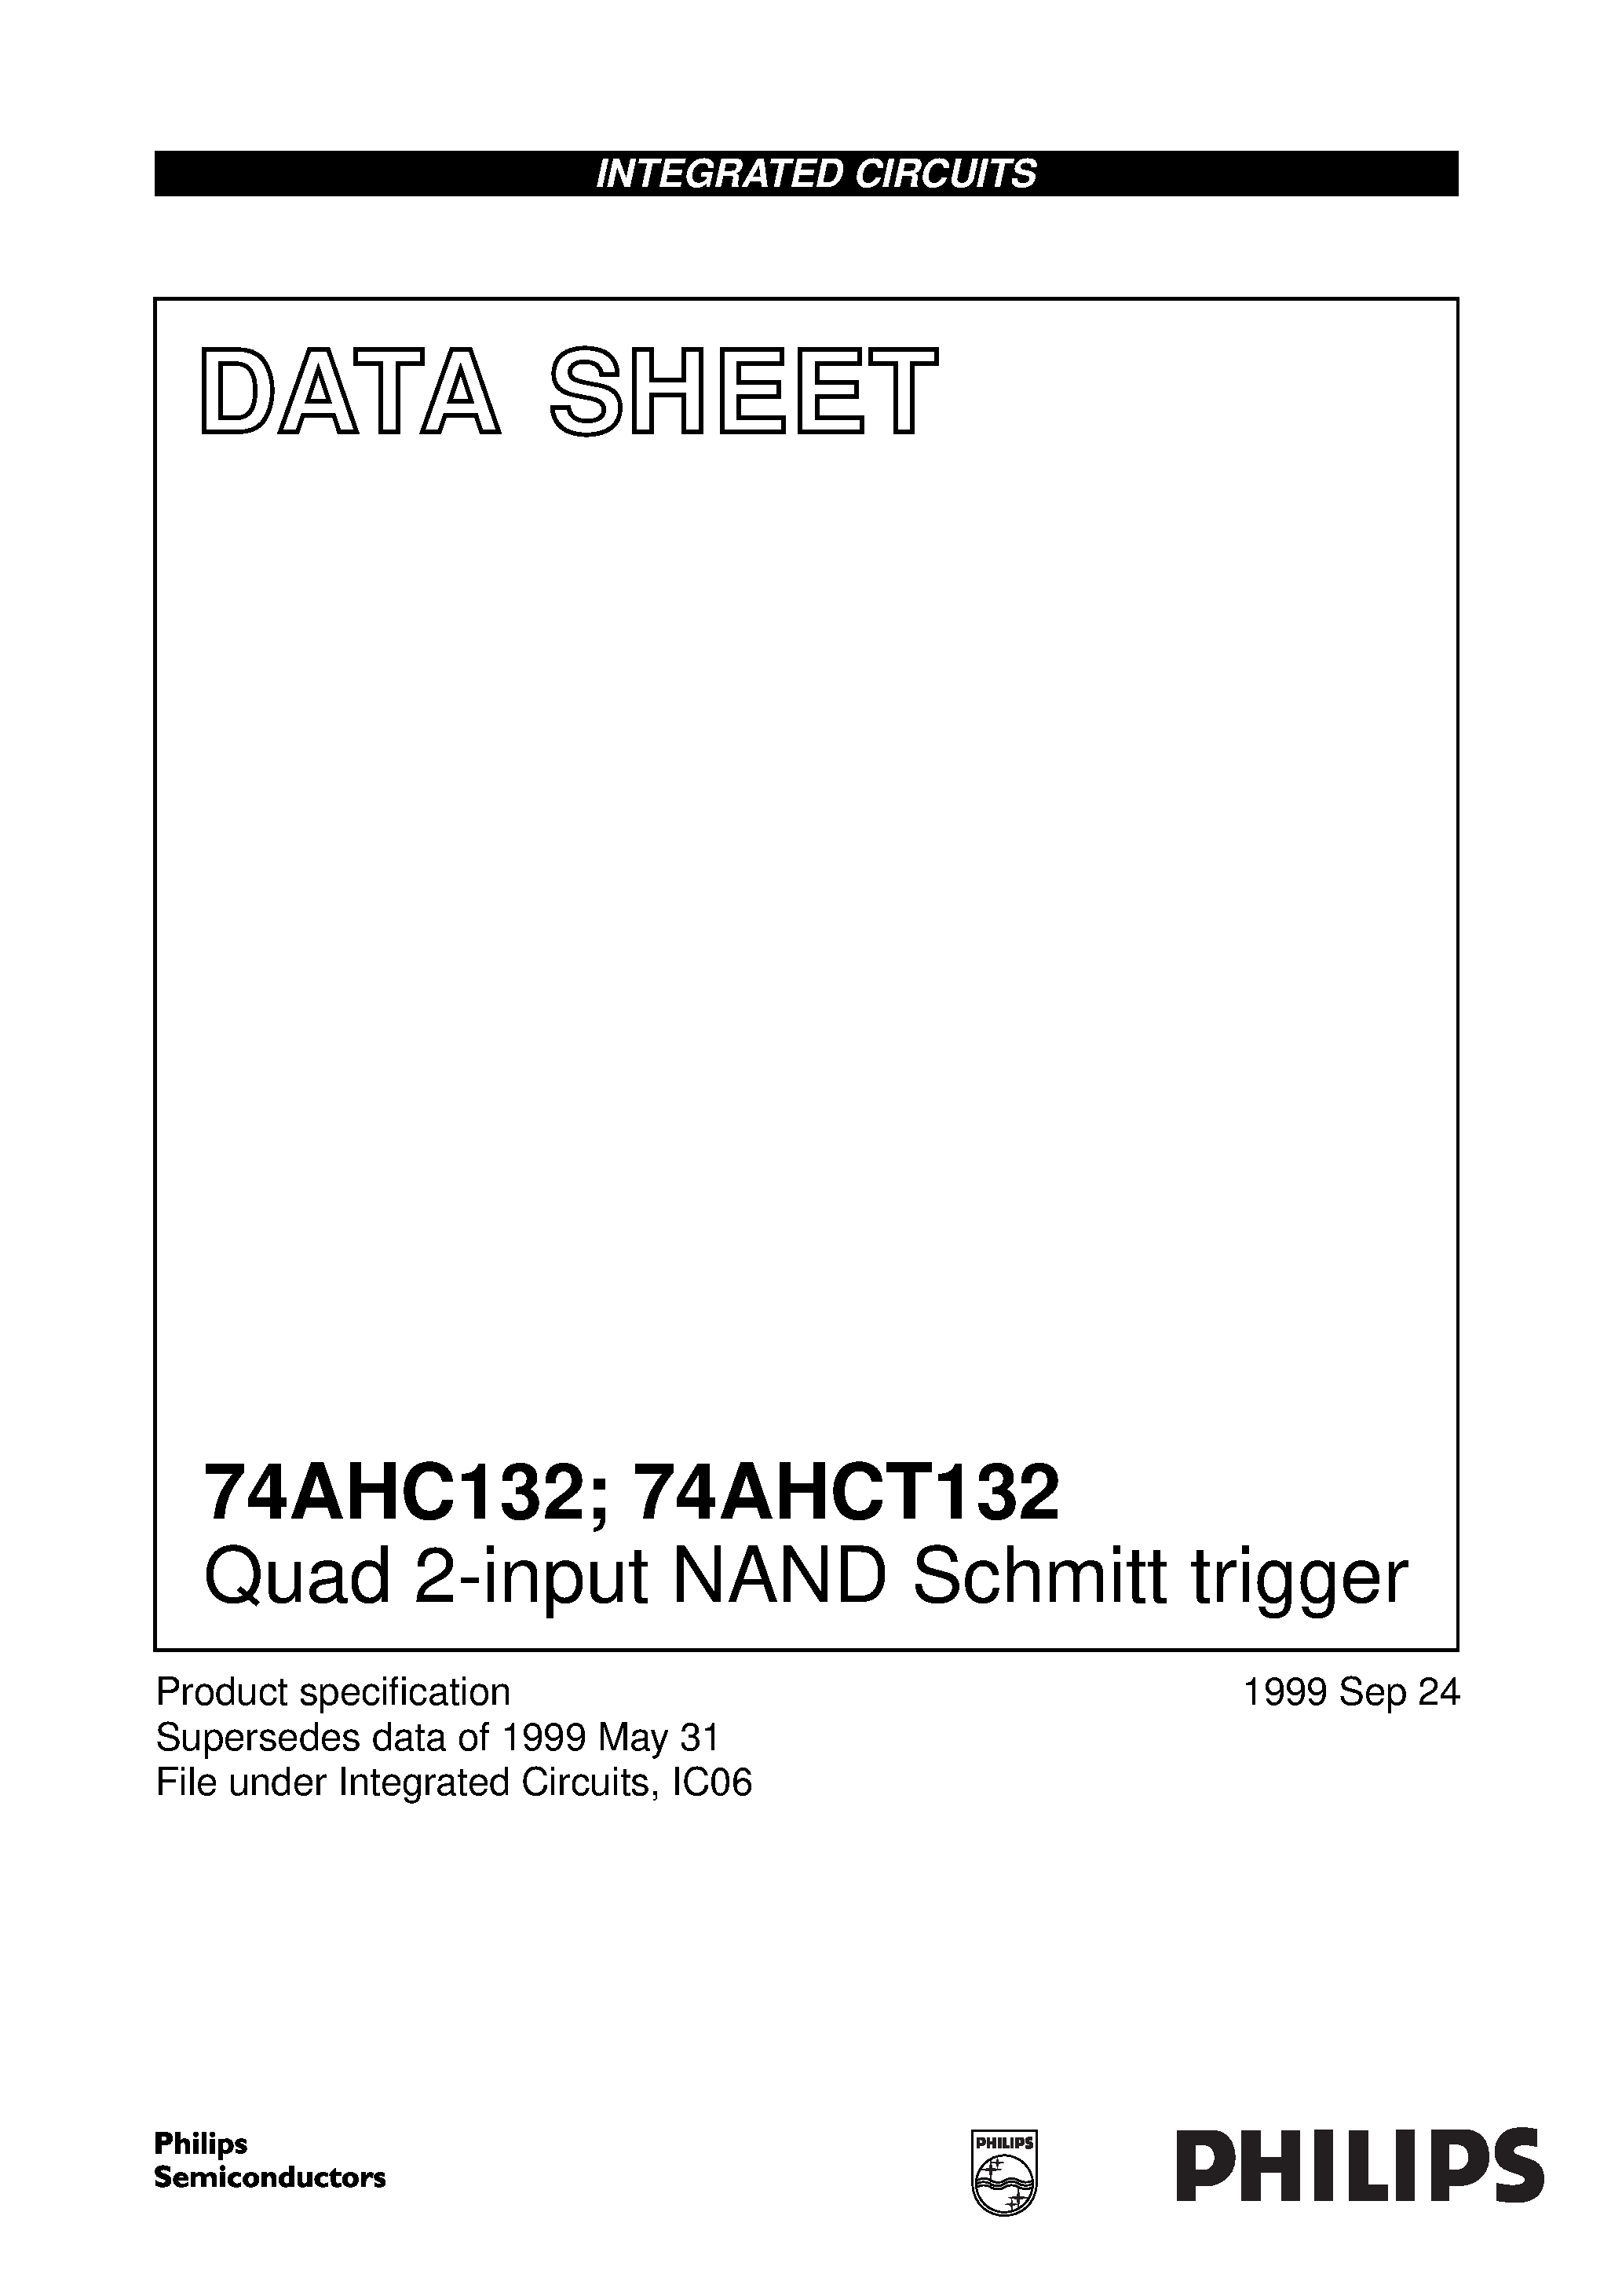 Datasheet 74AHC132 - Quad 2-input NAND Schmitt trigger page 1